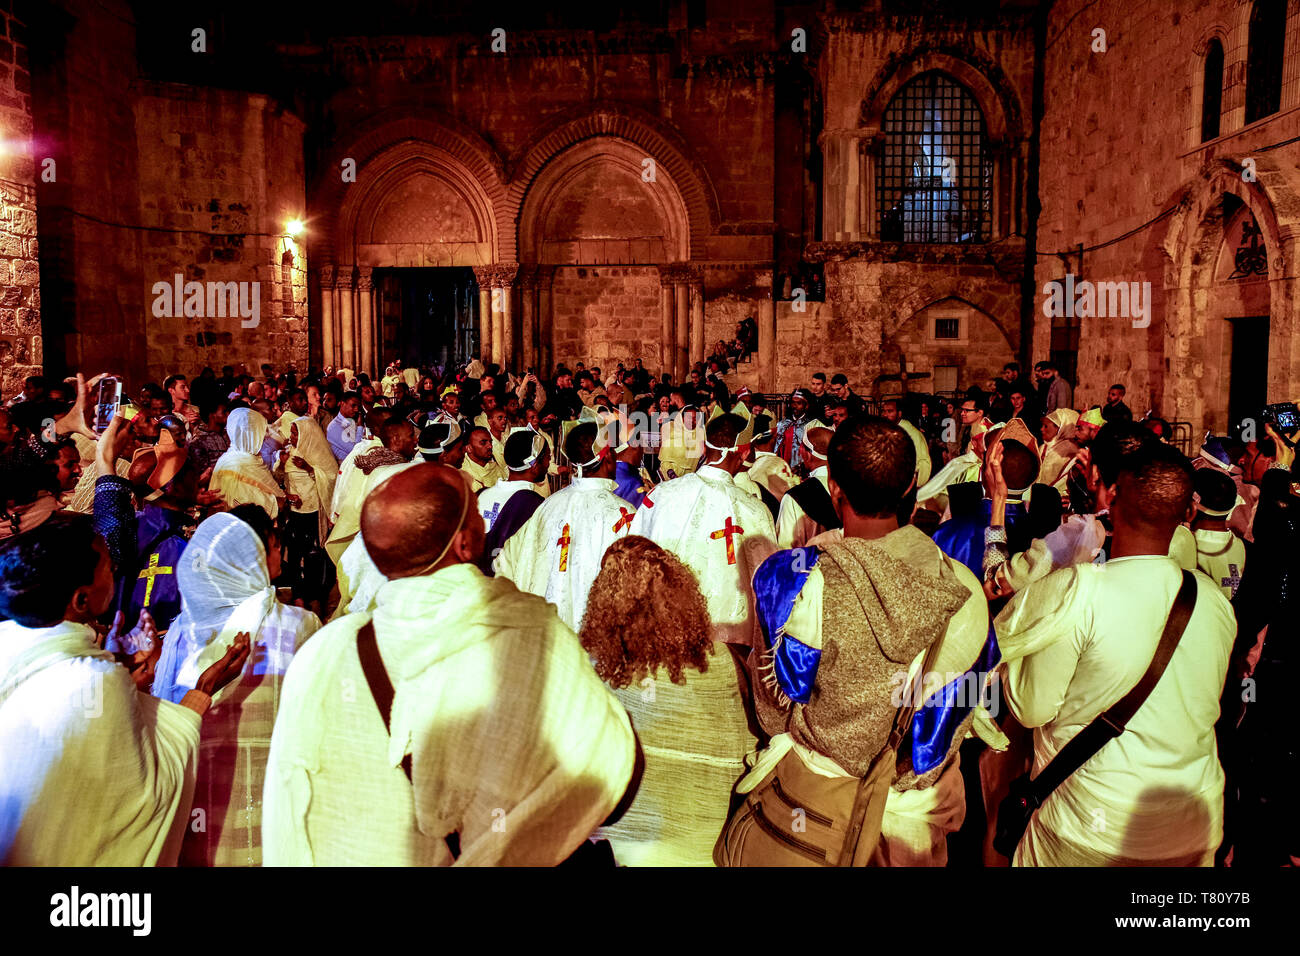 Los cristianos celebran la Pascua ortodoxa etíope, vigilia frente a la Iglesia del Santo Sepulcro, en Jerusalén, Israel, Oriente Medio Foto de stock